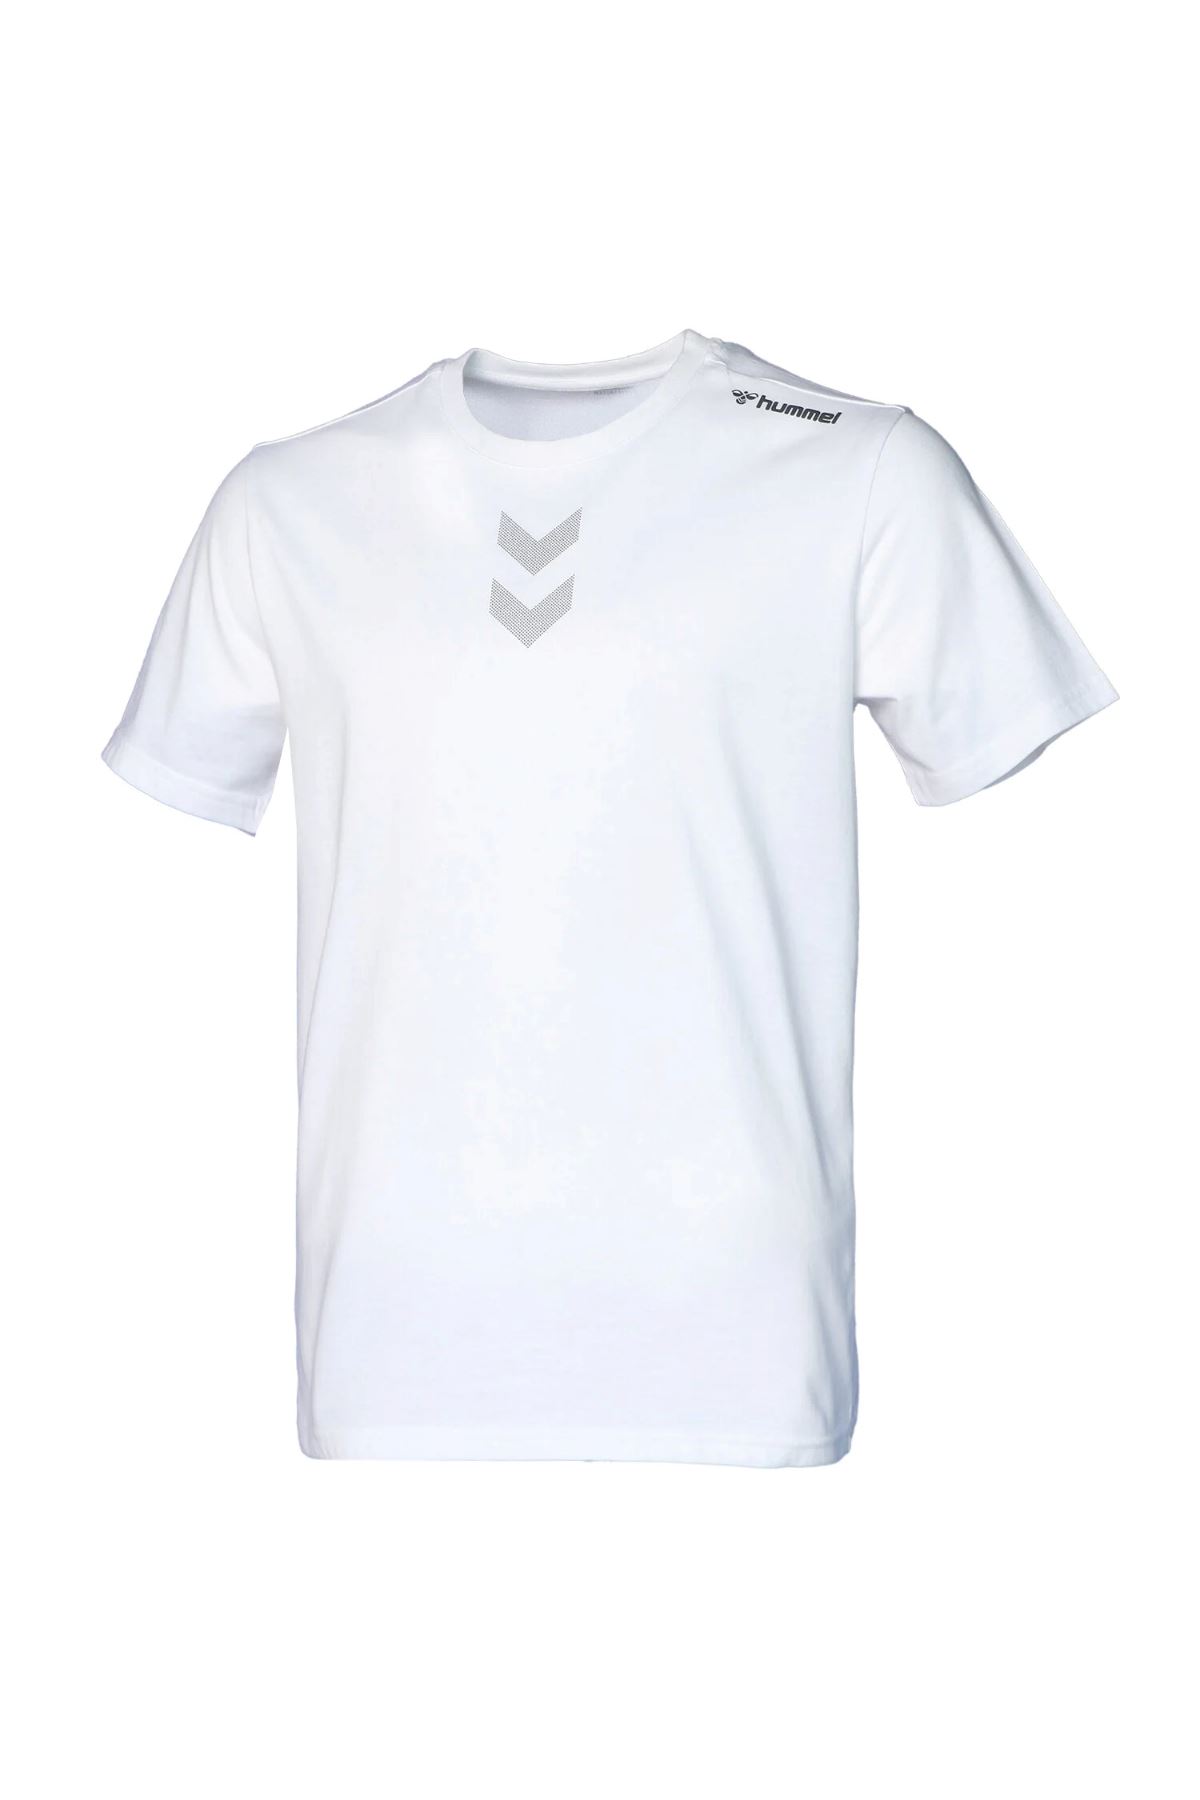 Hummel Hmlt-Mt Comfy T-Shırt Erkek Beyaz Tişört - 911679-9001